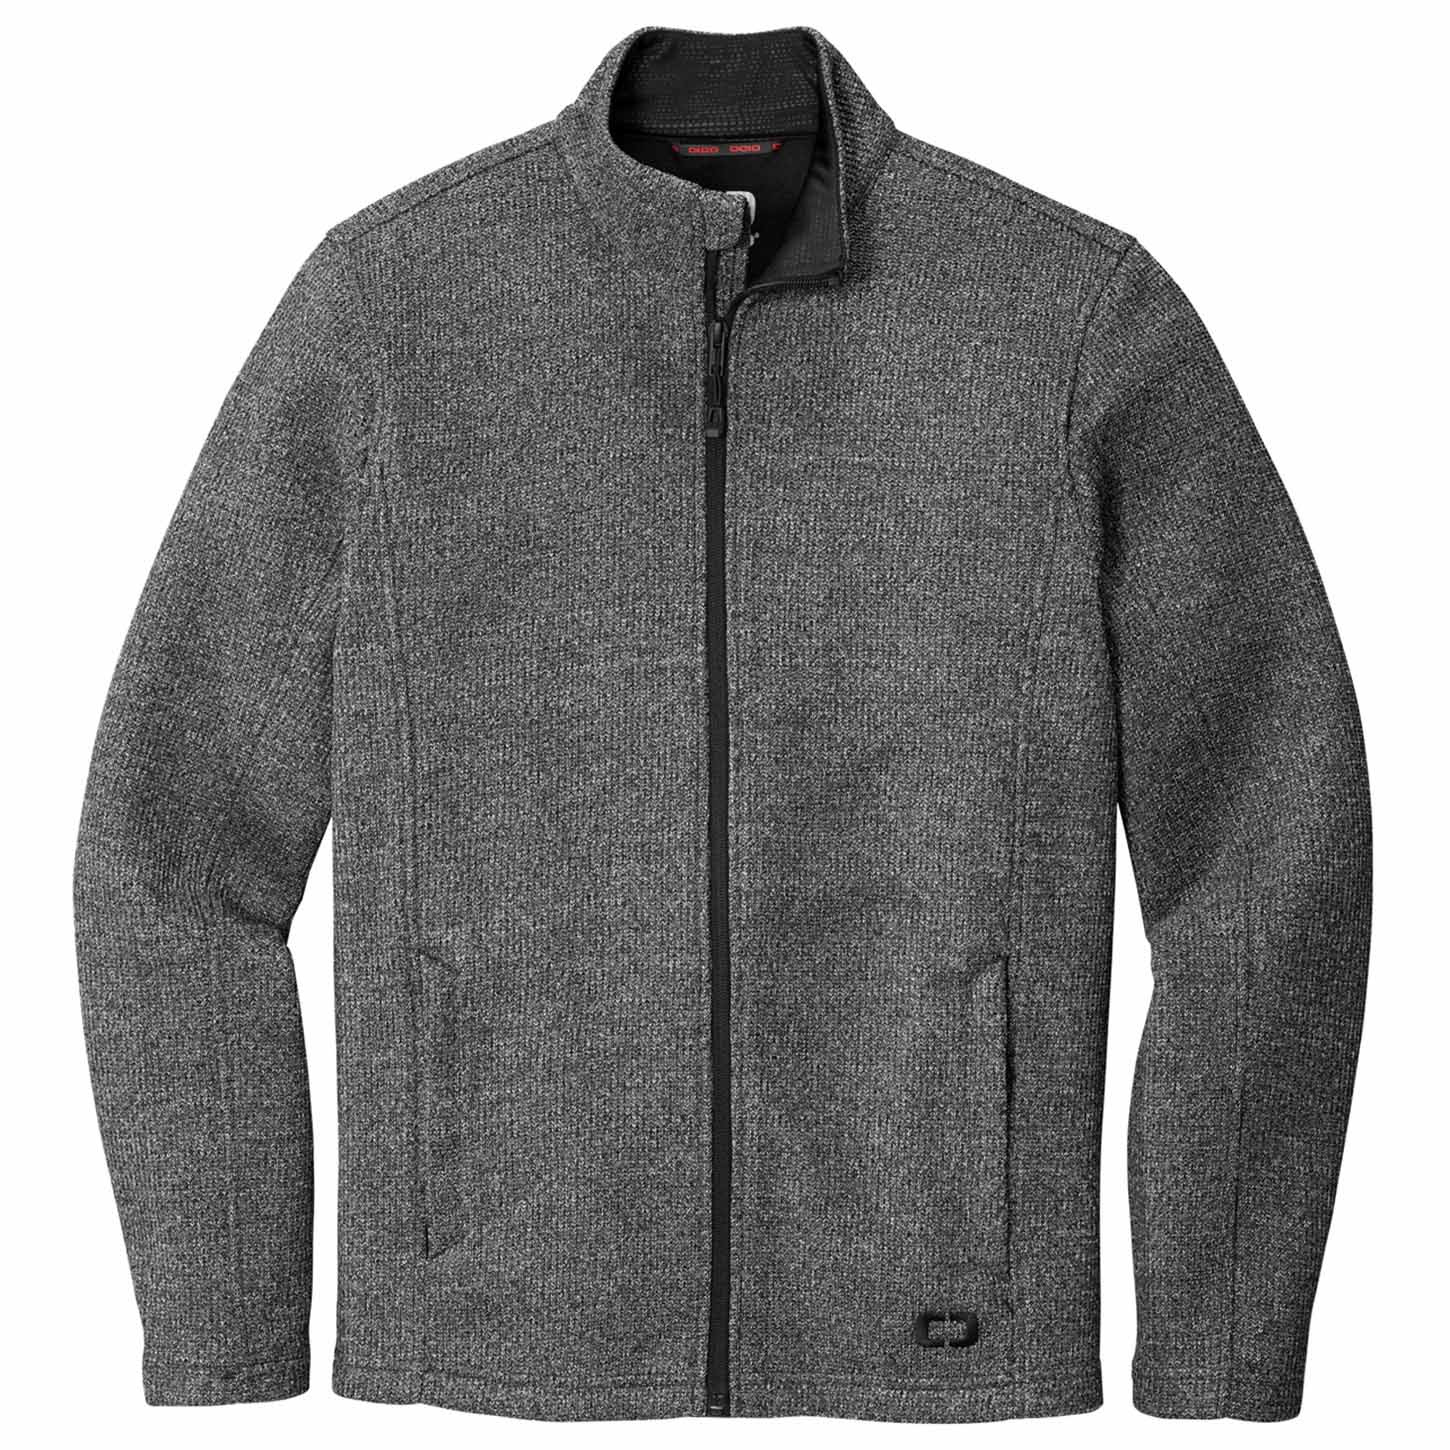 OGIO OG727 Grit Fleece Jacket - Diesel Grey Heather | Full Source